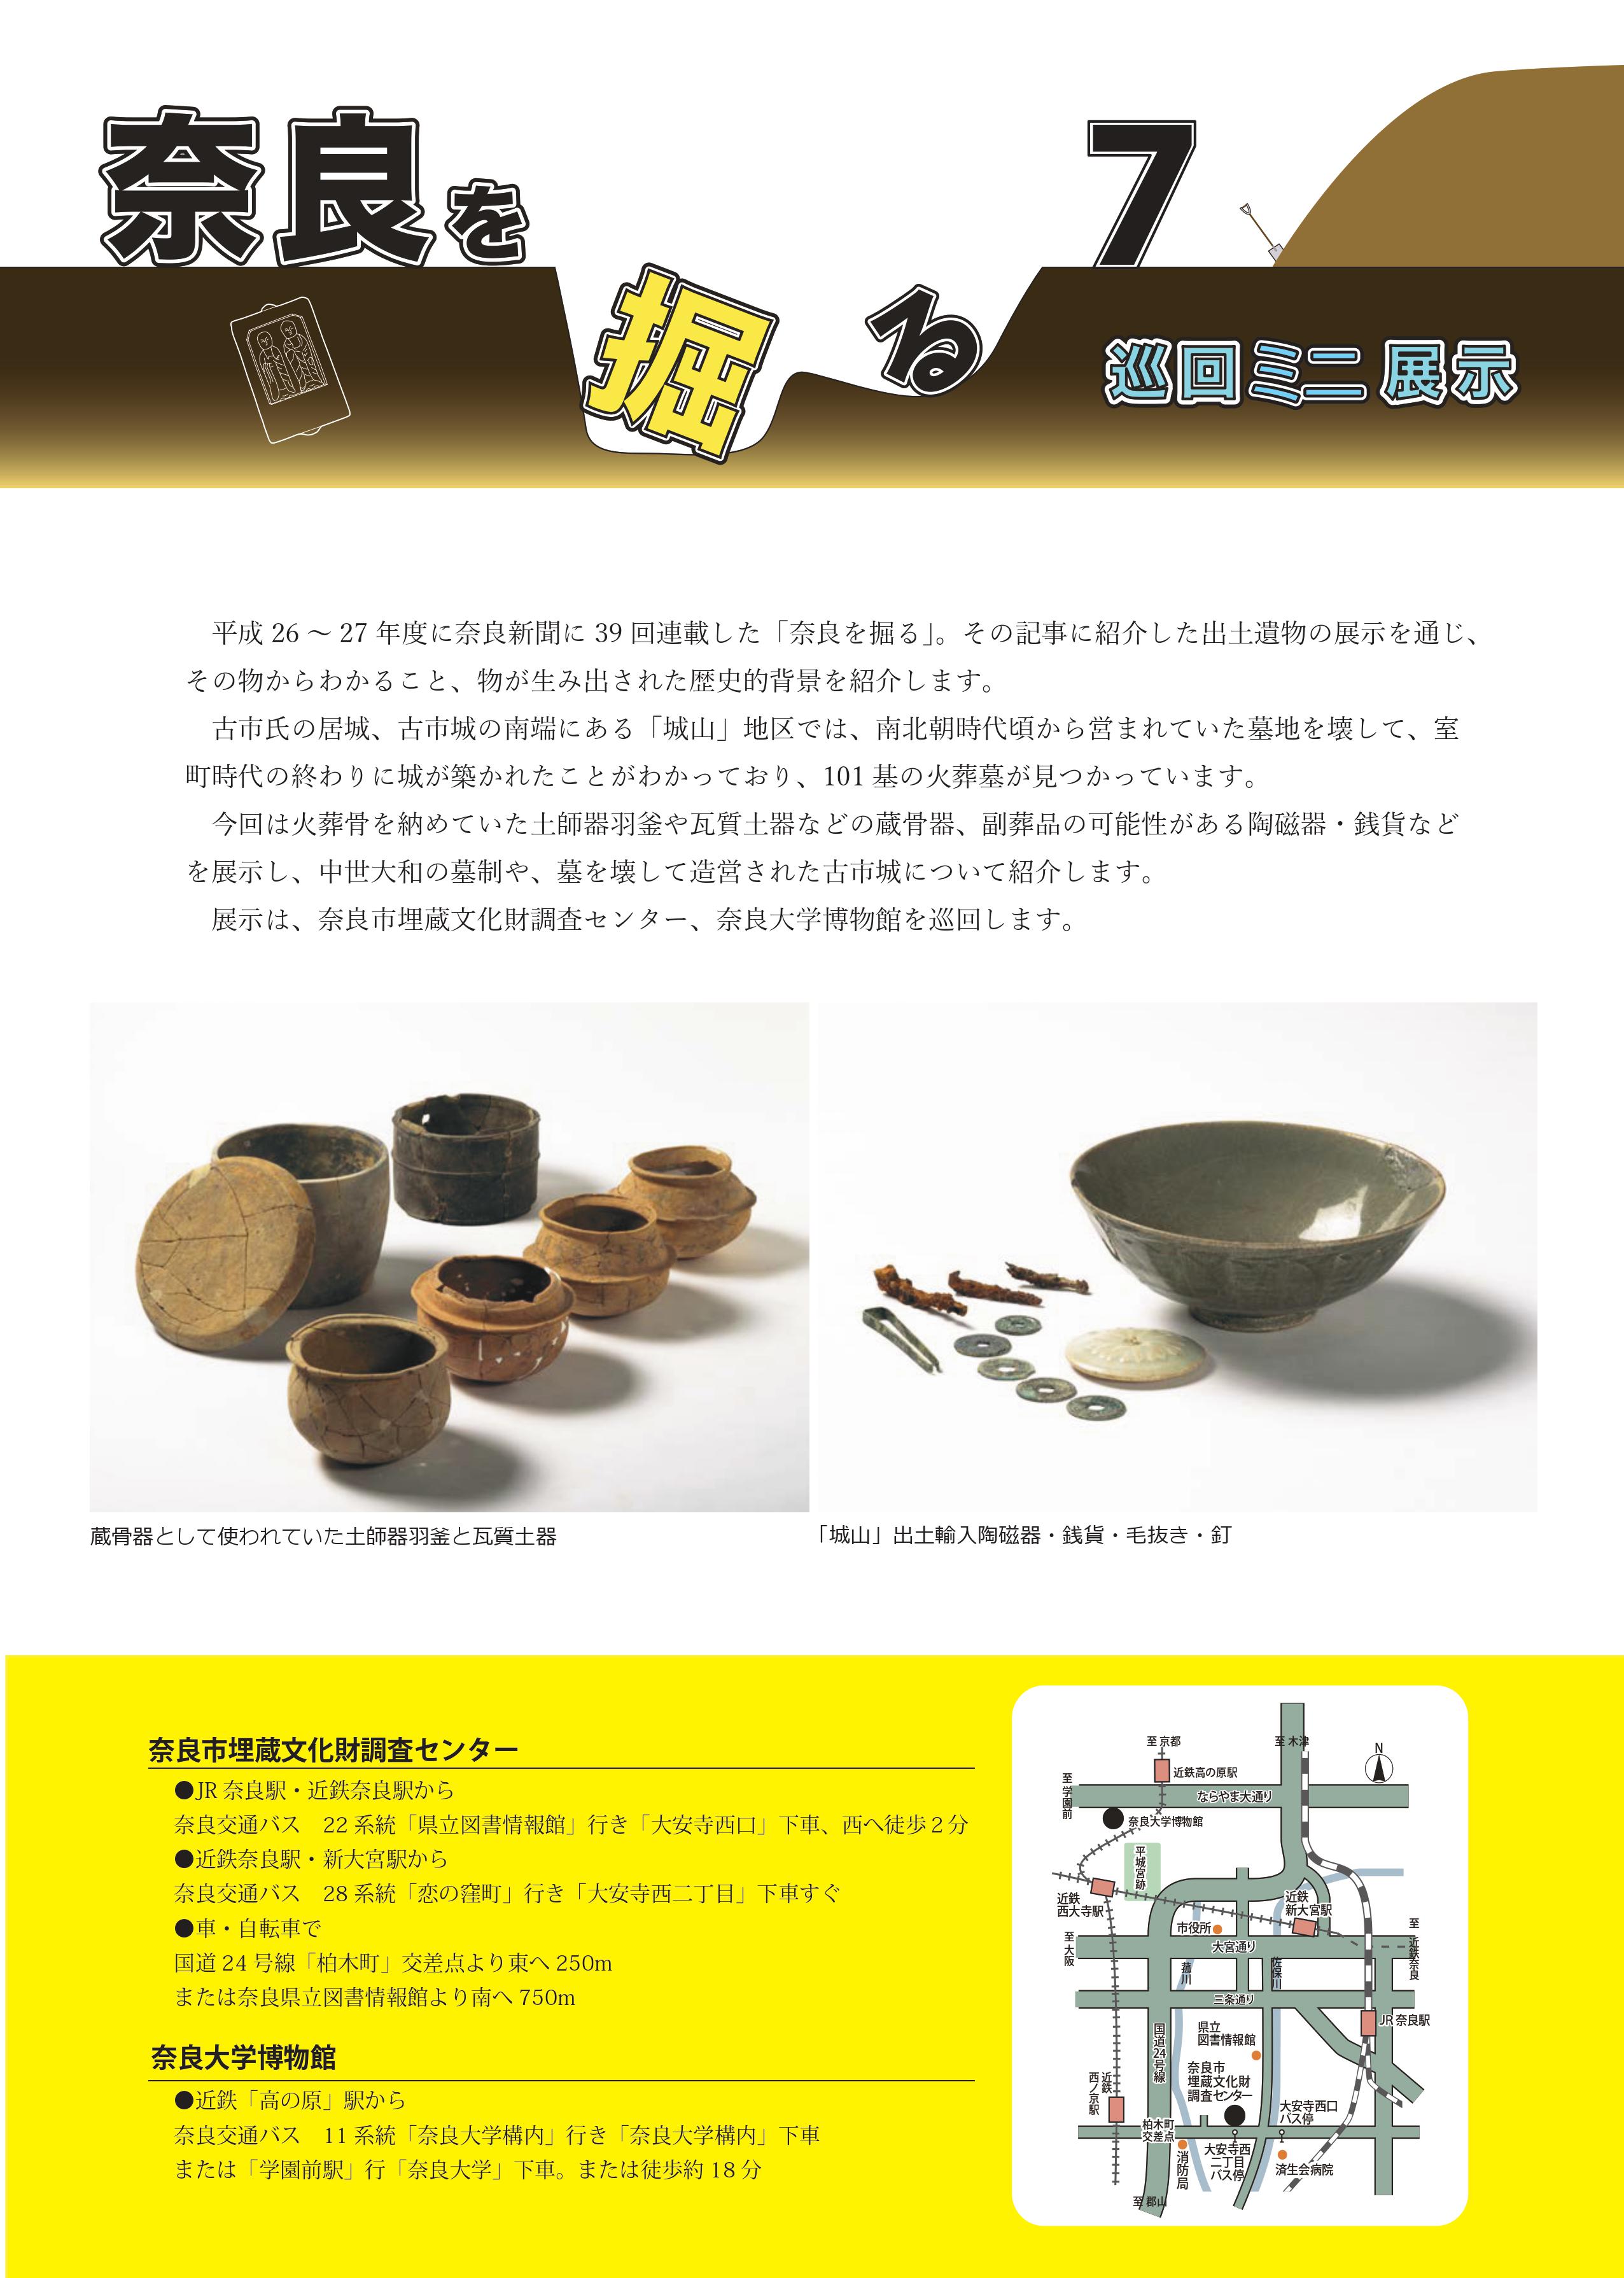 令和元年度巡回ミニ展示「奈良を掘る7」の開催について(令和元年6月3日発表)の画像2